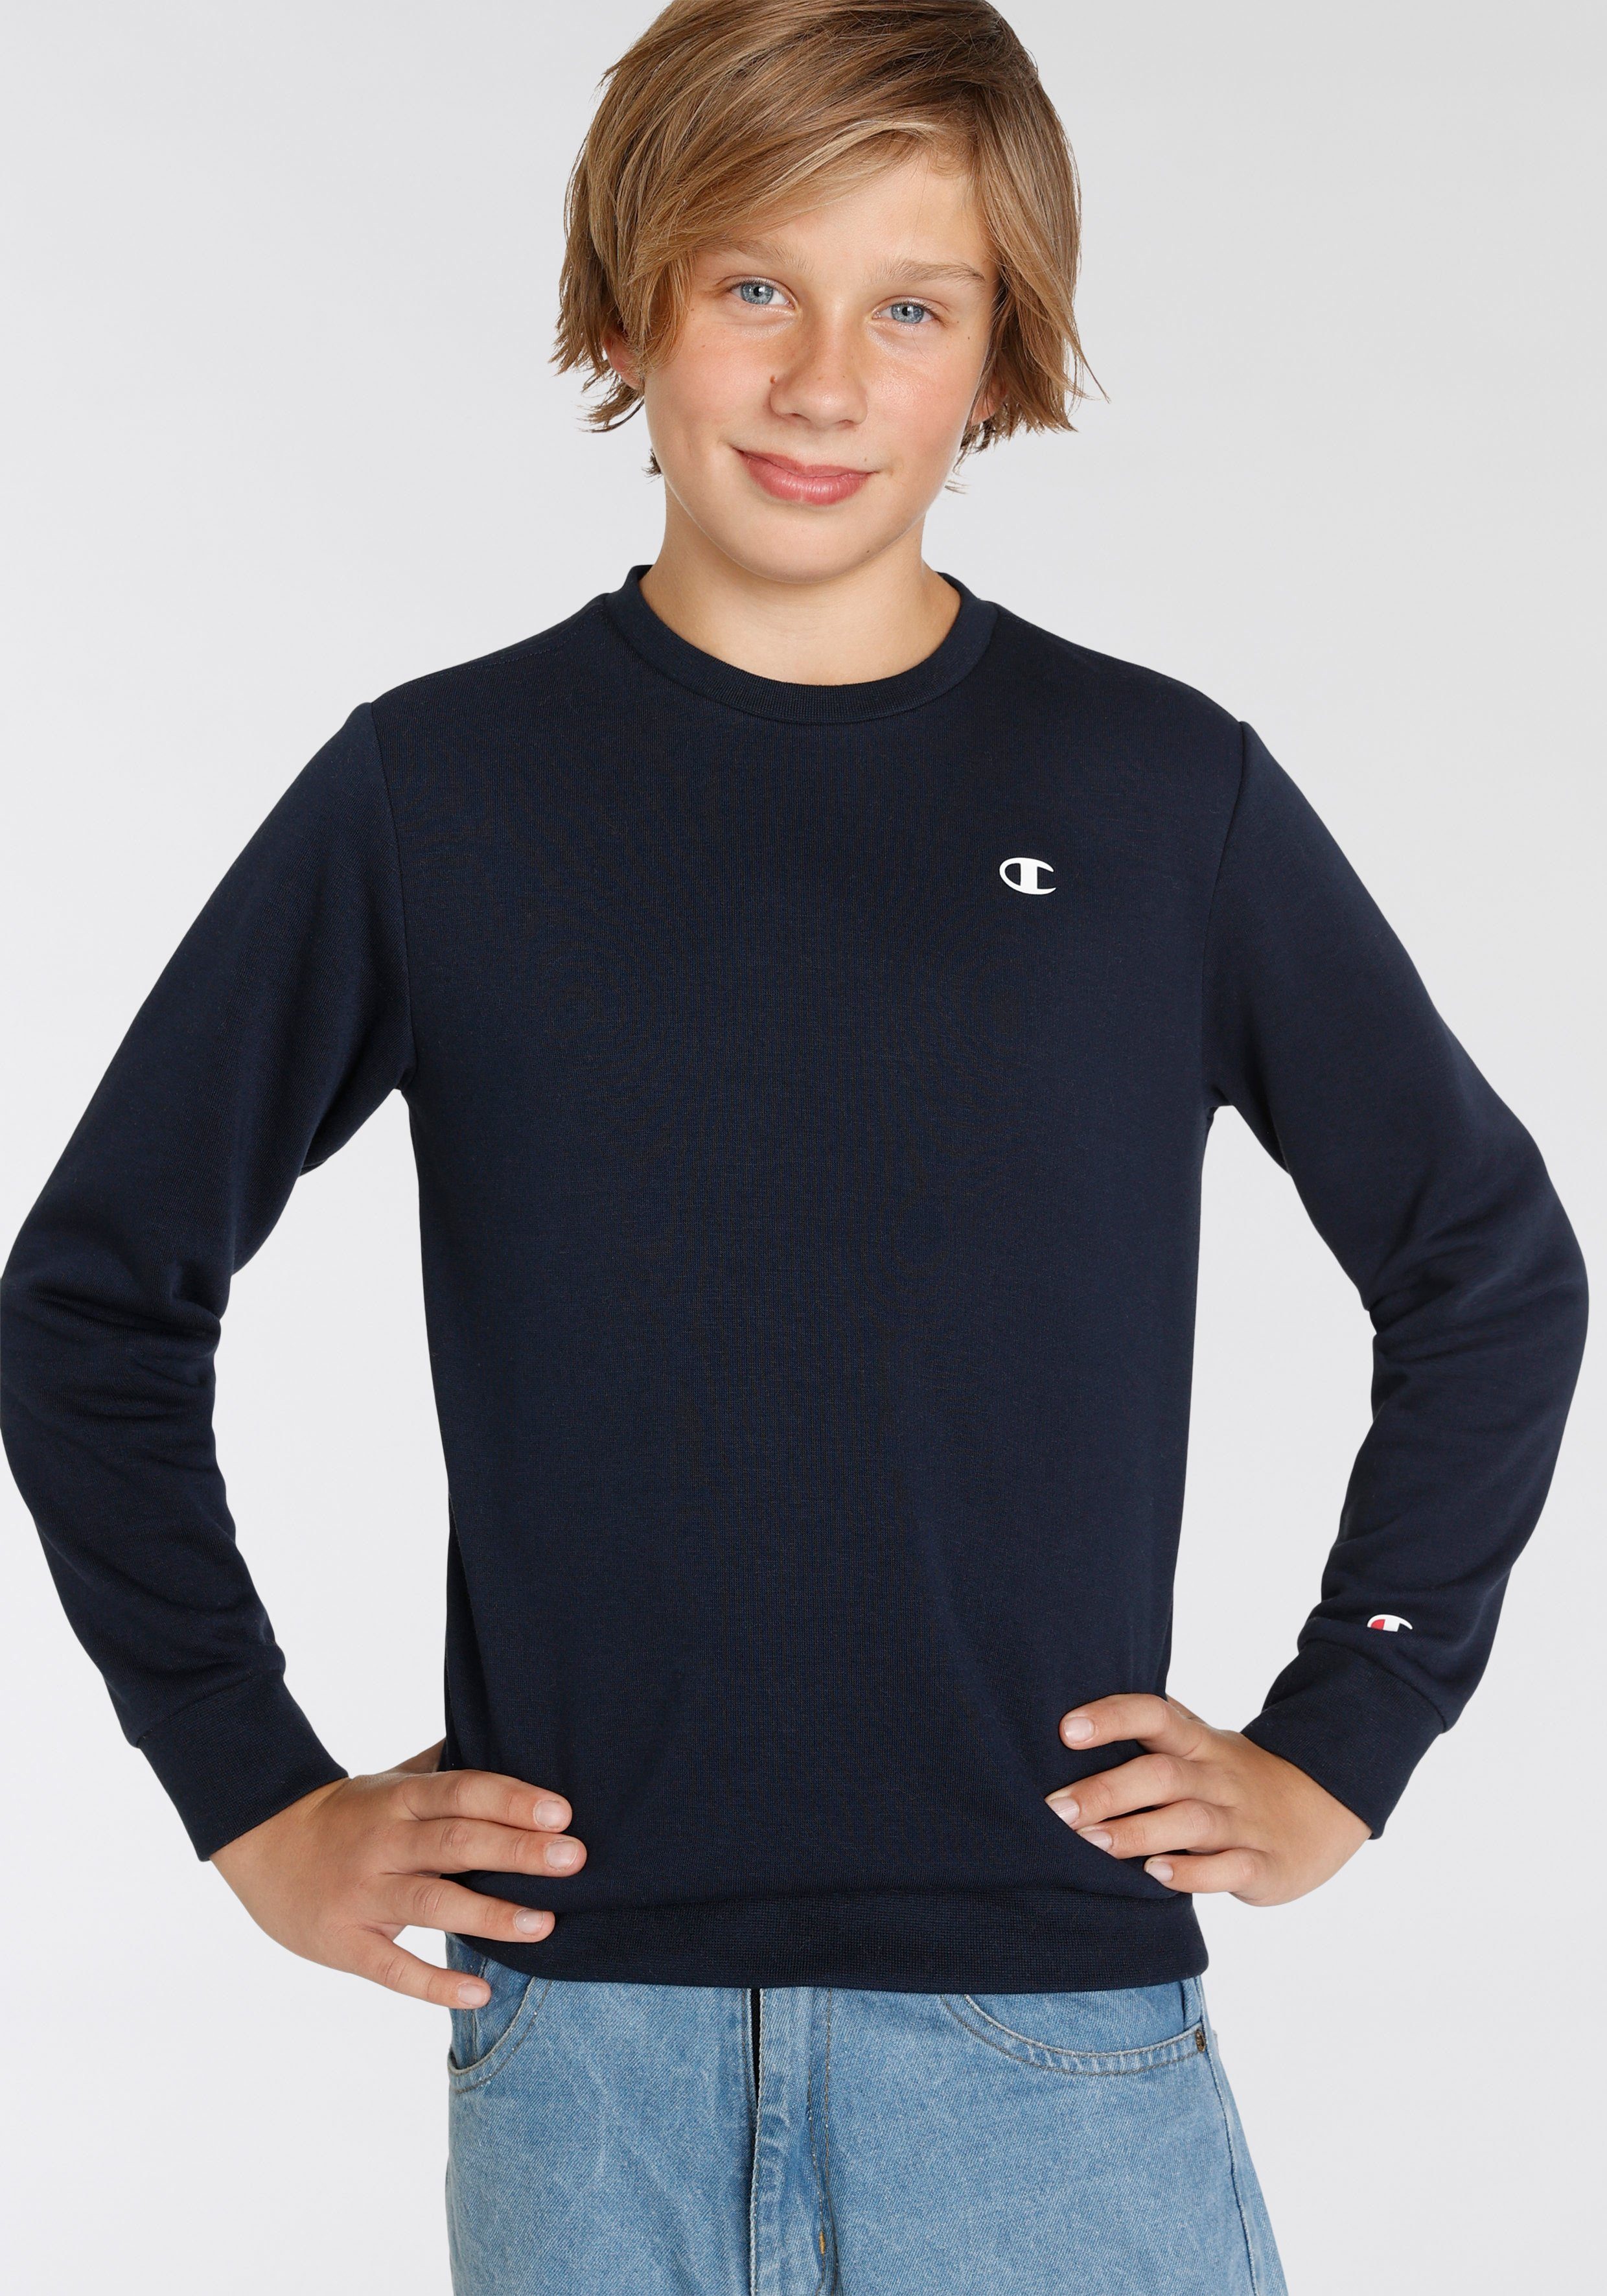 Champion Sweatshirt Basic Crewneck Sweatshirt Aus Kinder, Baumwoll-Polyester-Mischung für - angenehmer